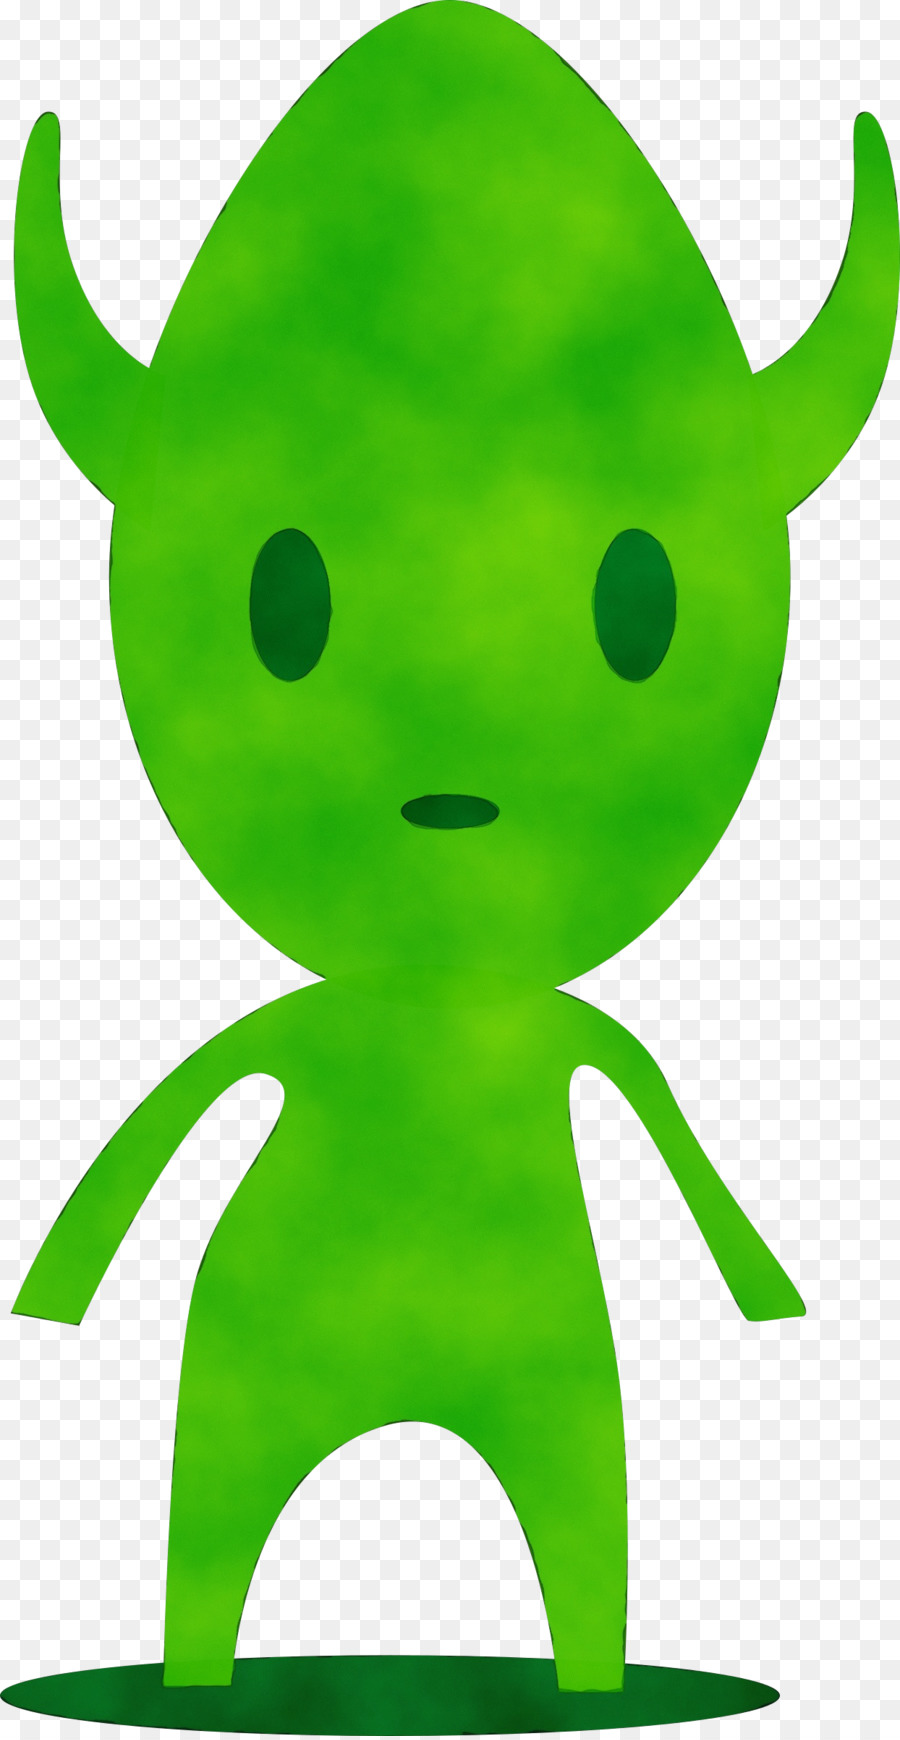 green clip art fictional character symbol